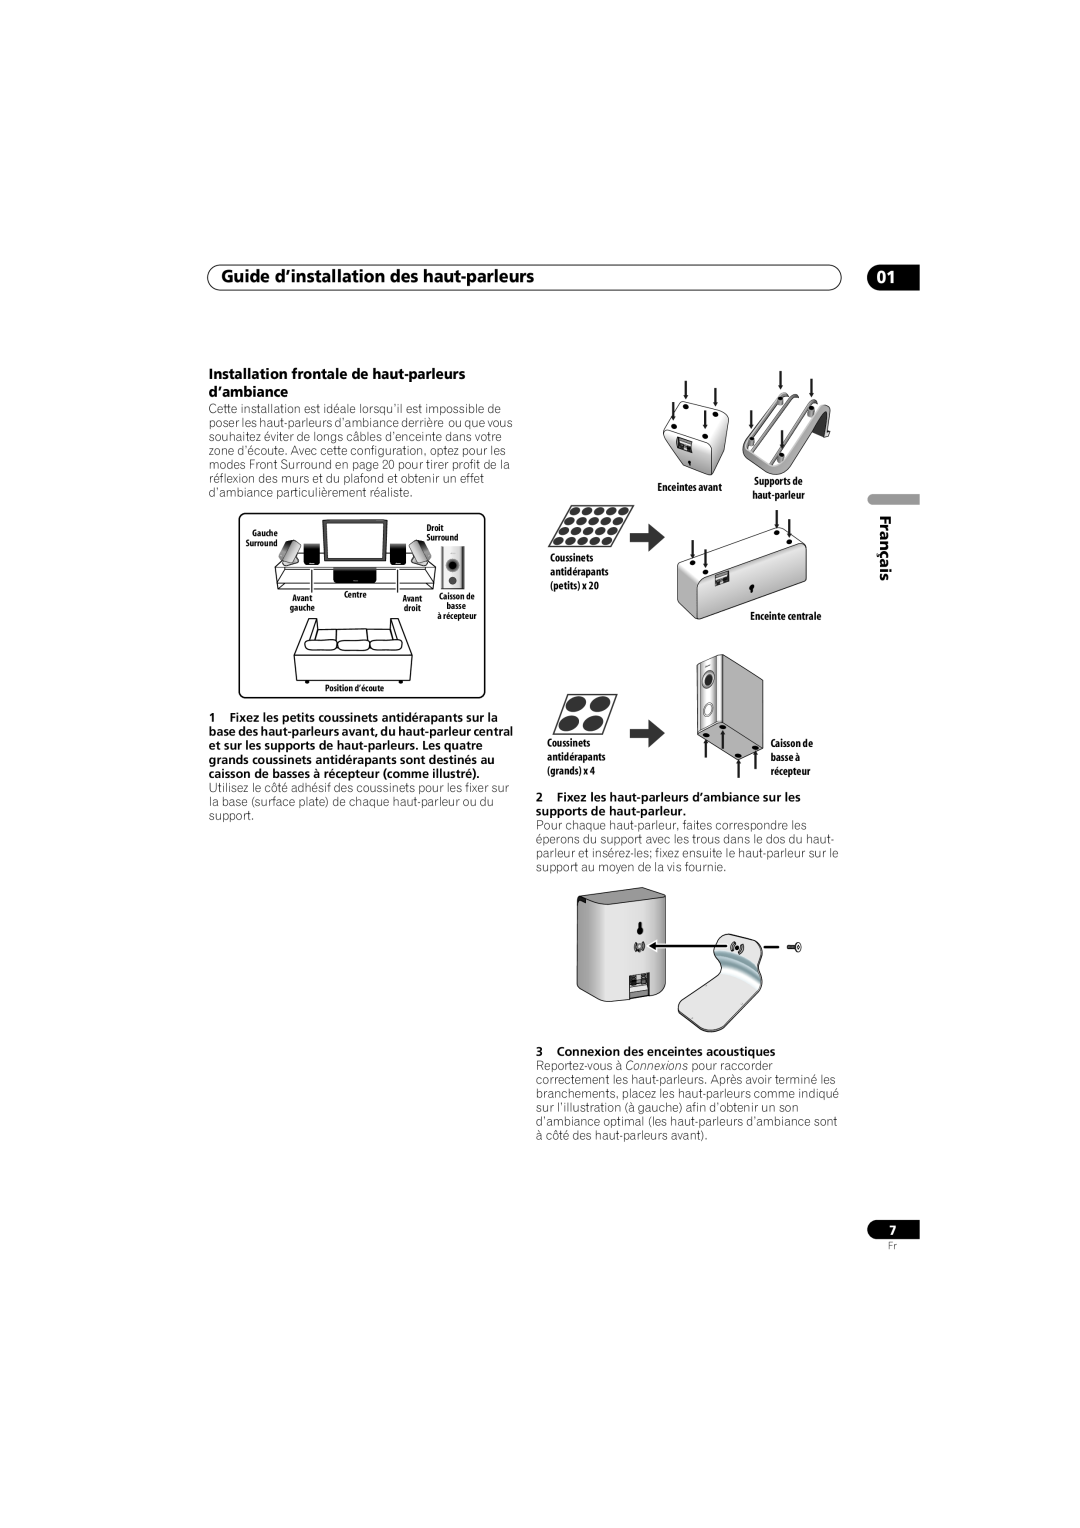 Pioneer SX-SW260 Guide d’installation des haut-parleurs, Installation frontale de haut-parleursd’ambiance, Français 